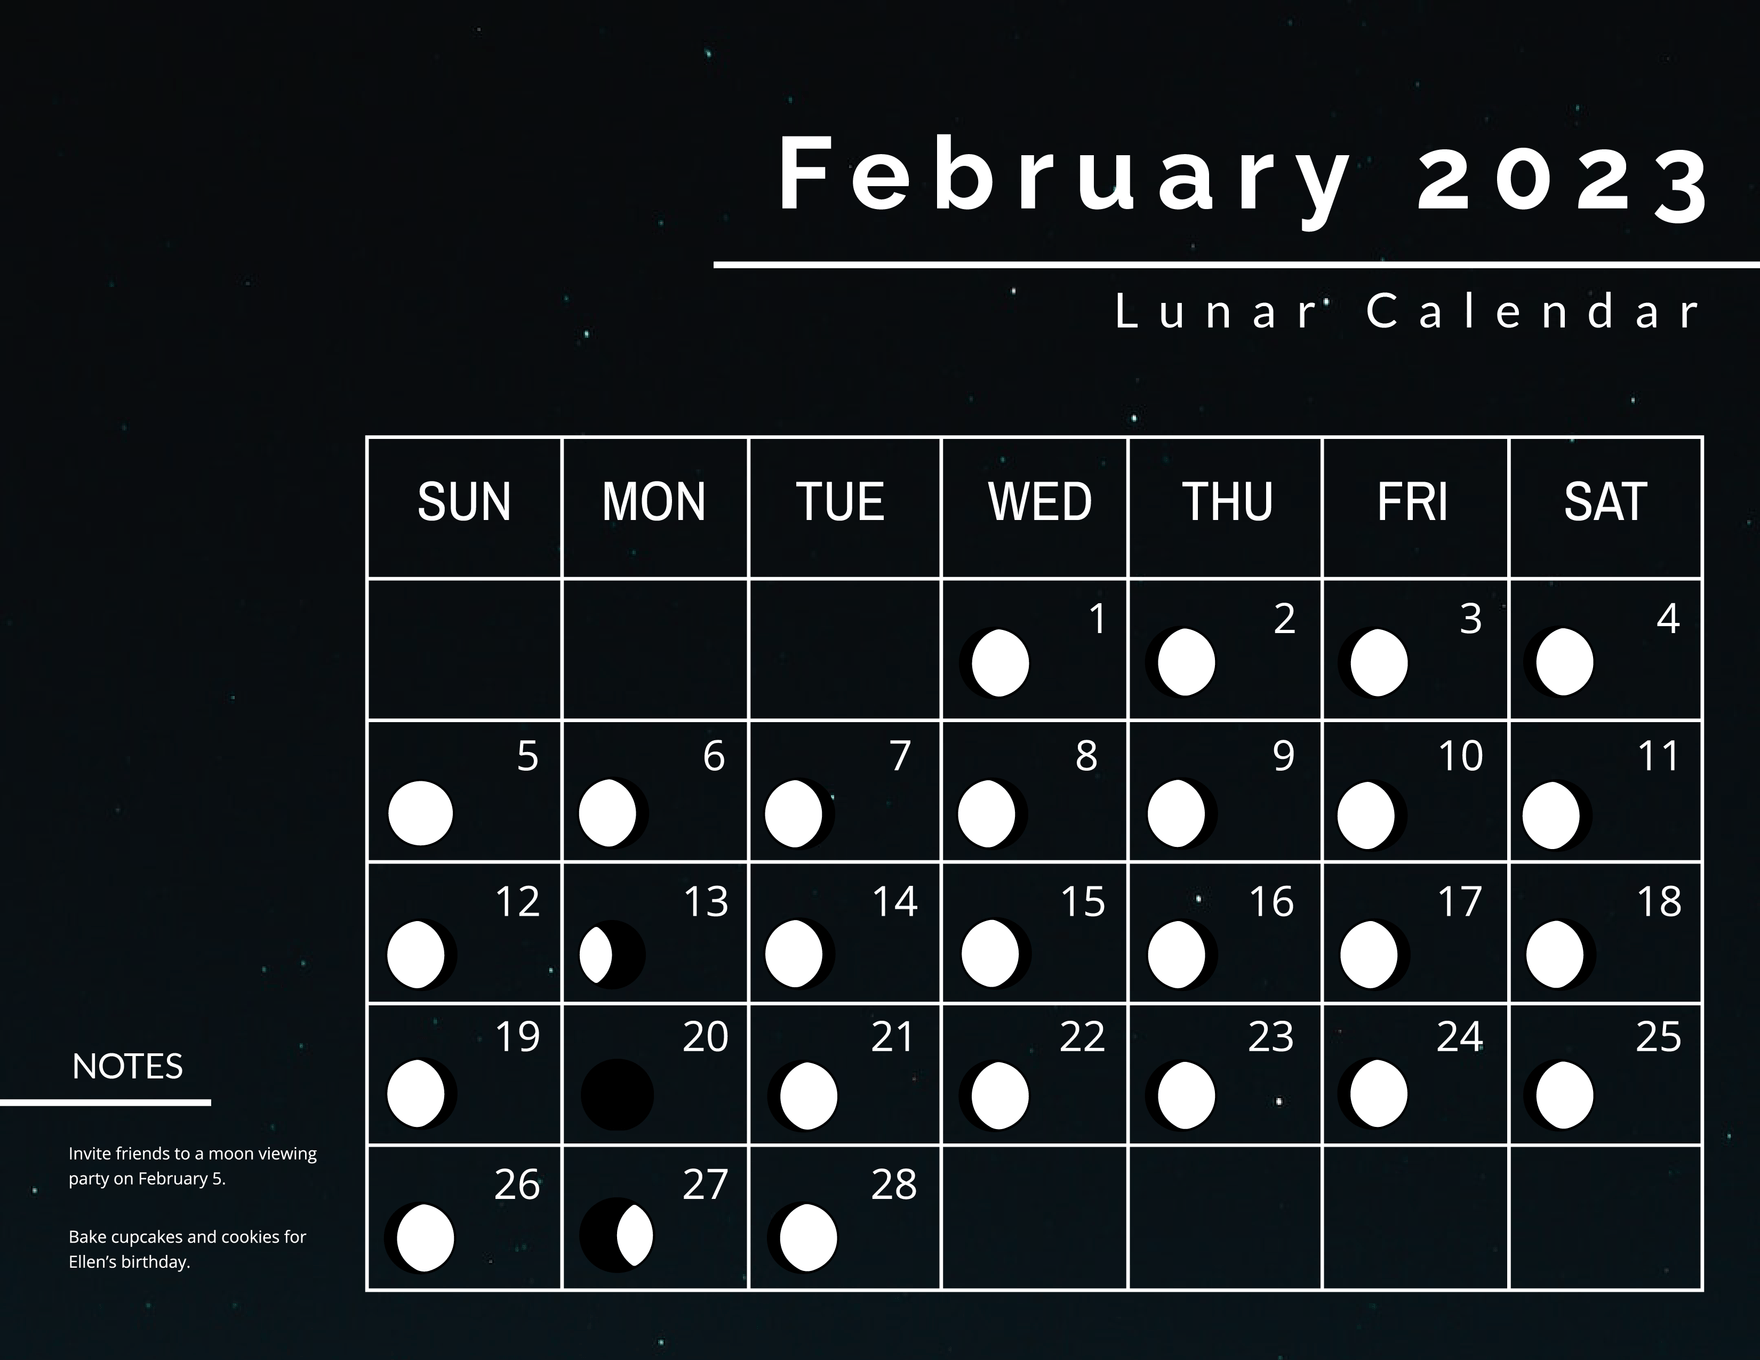 Lunar Calendar February 2023